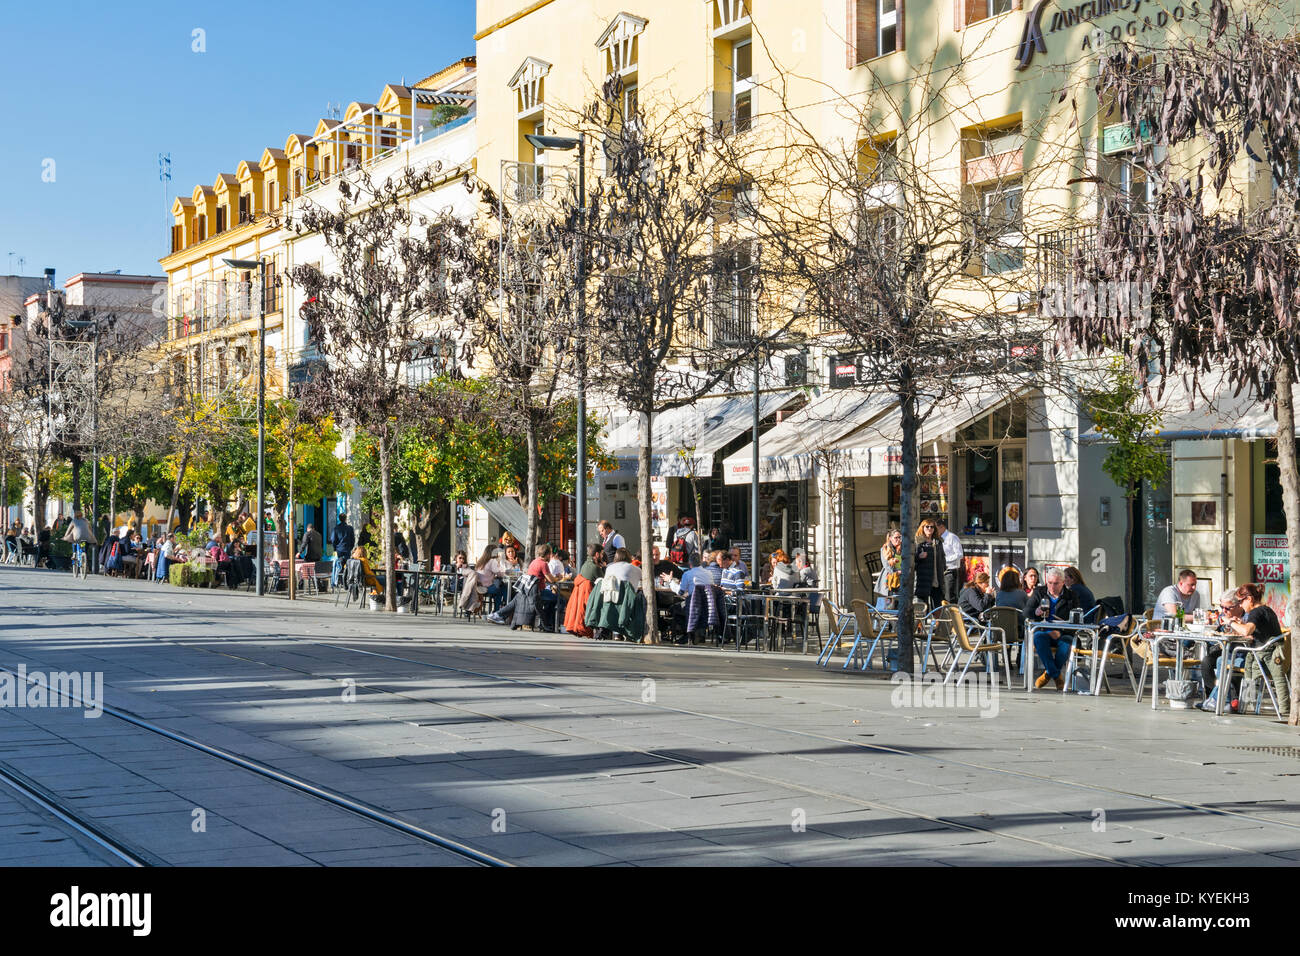 Séville espagne rue typique avec des cafés en plein air plein de gens Banque D'Images